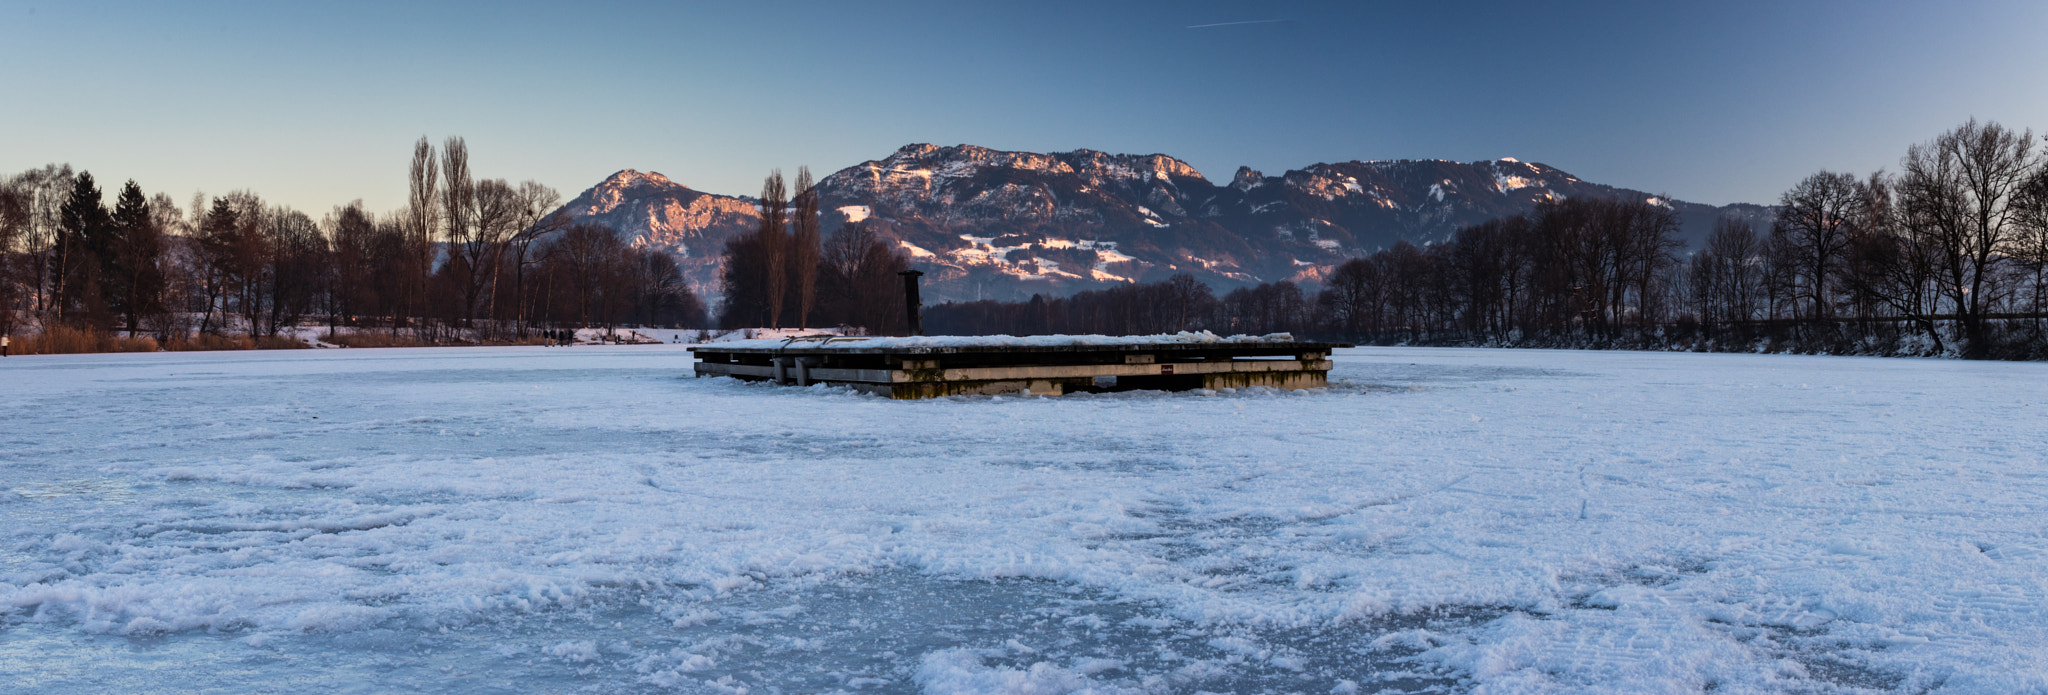 Canon EOS 80D sample photo. Frozen river photography